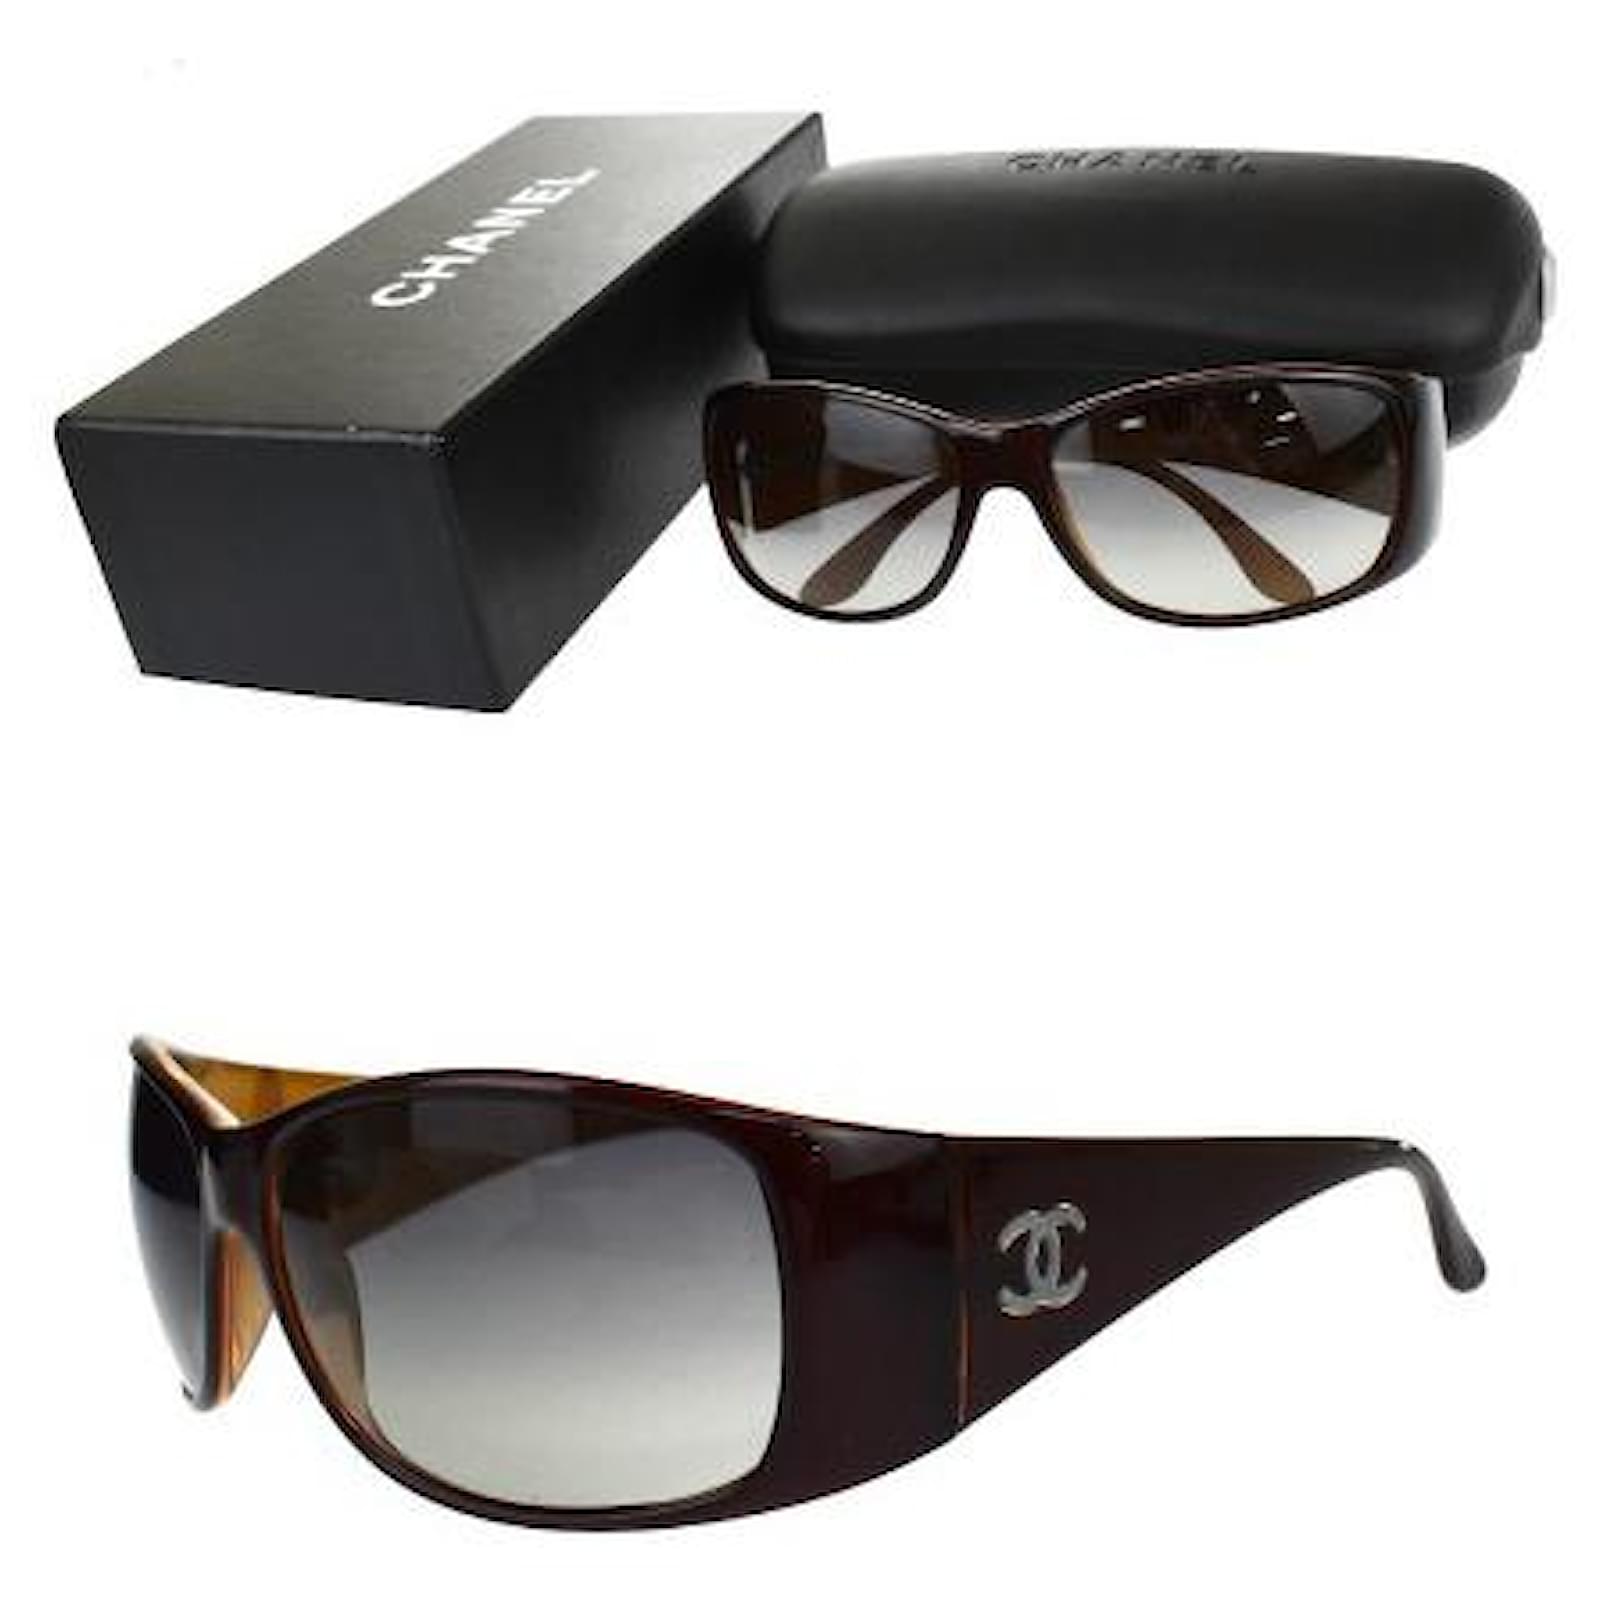 Used] Chanel CHANEL Sunglasses Coco Mark Brown Black Plastic Case